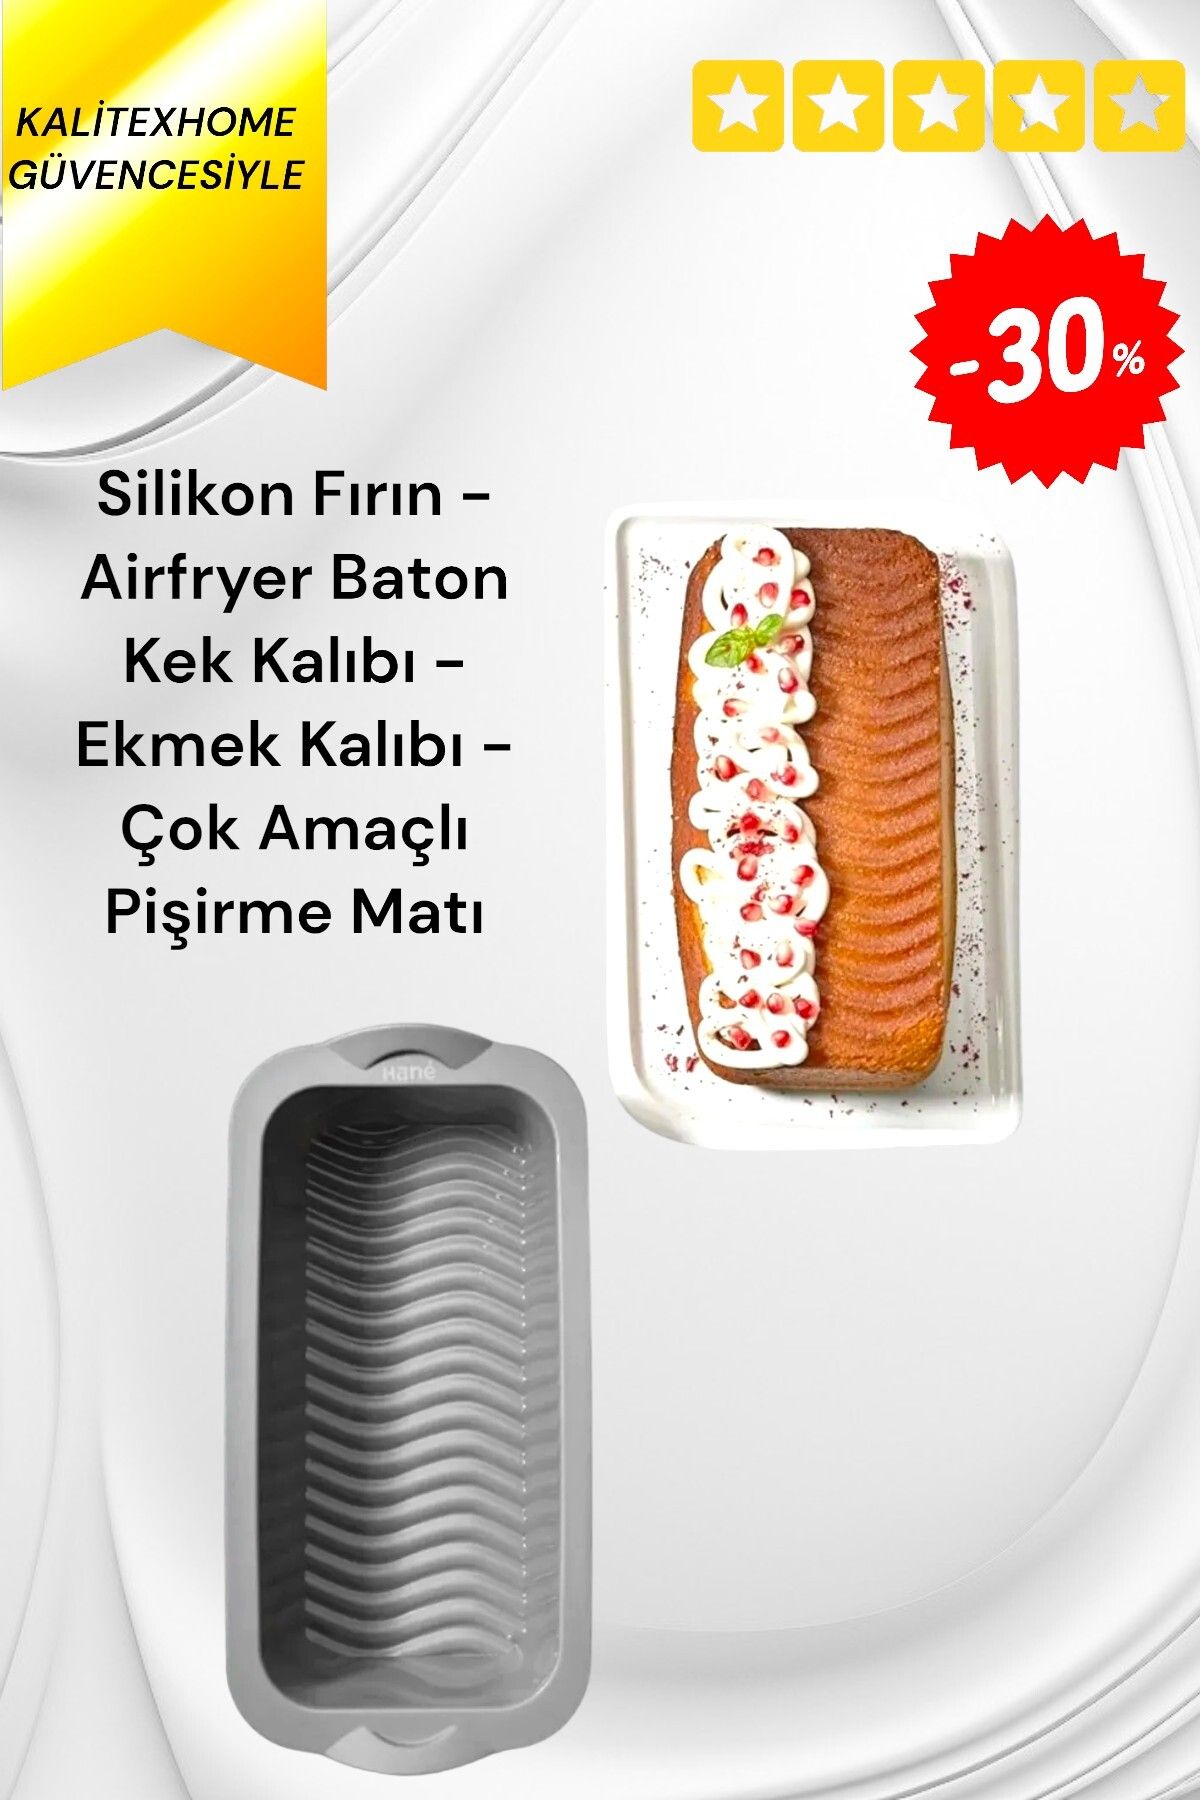 kalitexhome Silikon Fırın - Airfryer Baton Kek Kalıbı - Ekmek Kalıbı - Çok Amaçlı Pişirme Matı